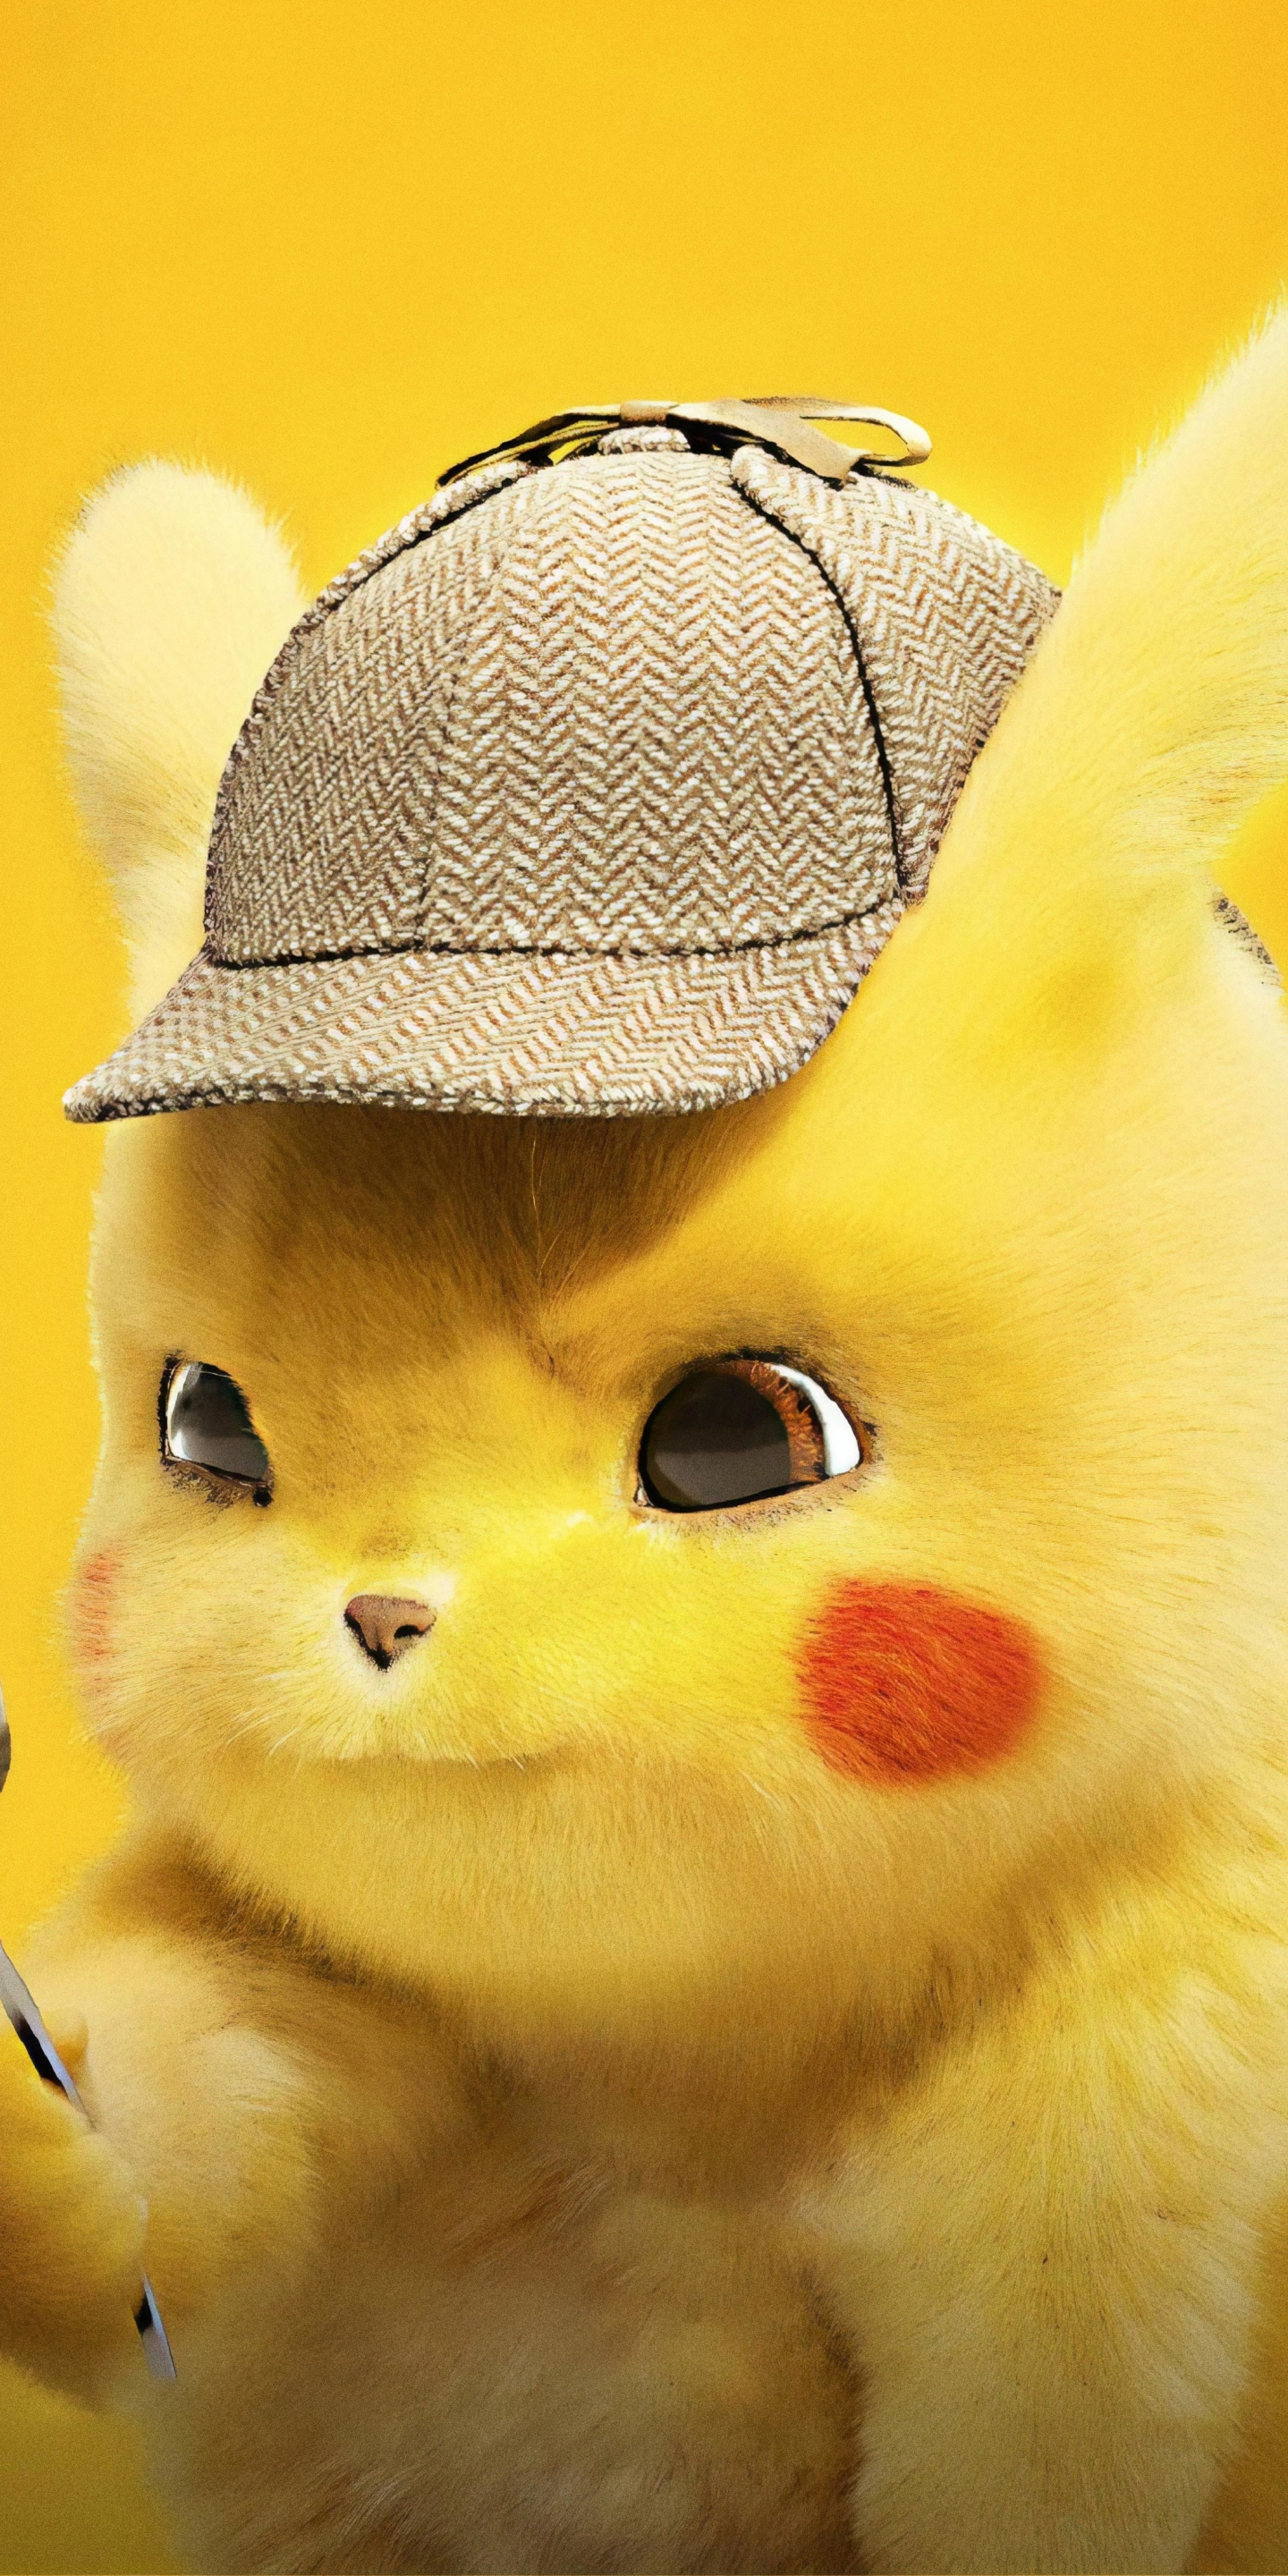 Download 1440x2880 Wallpaper Pikachu Cute Pokemon Detective